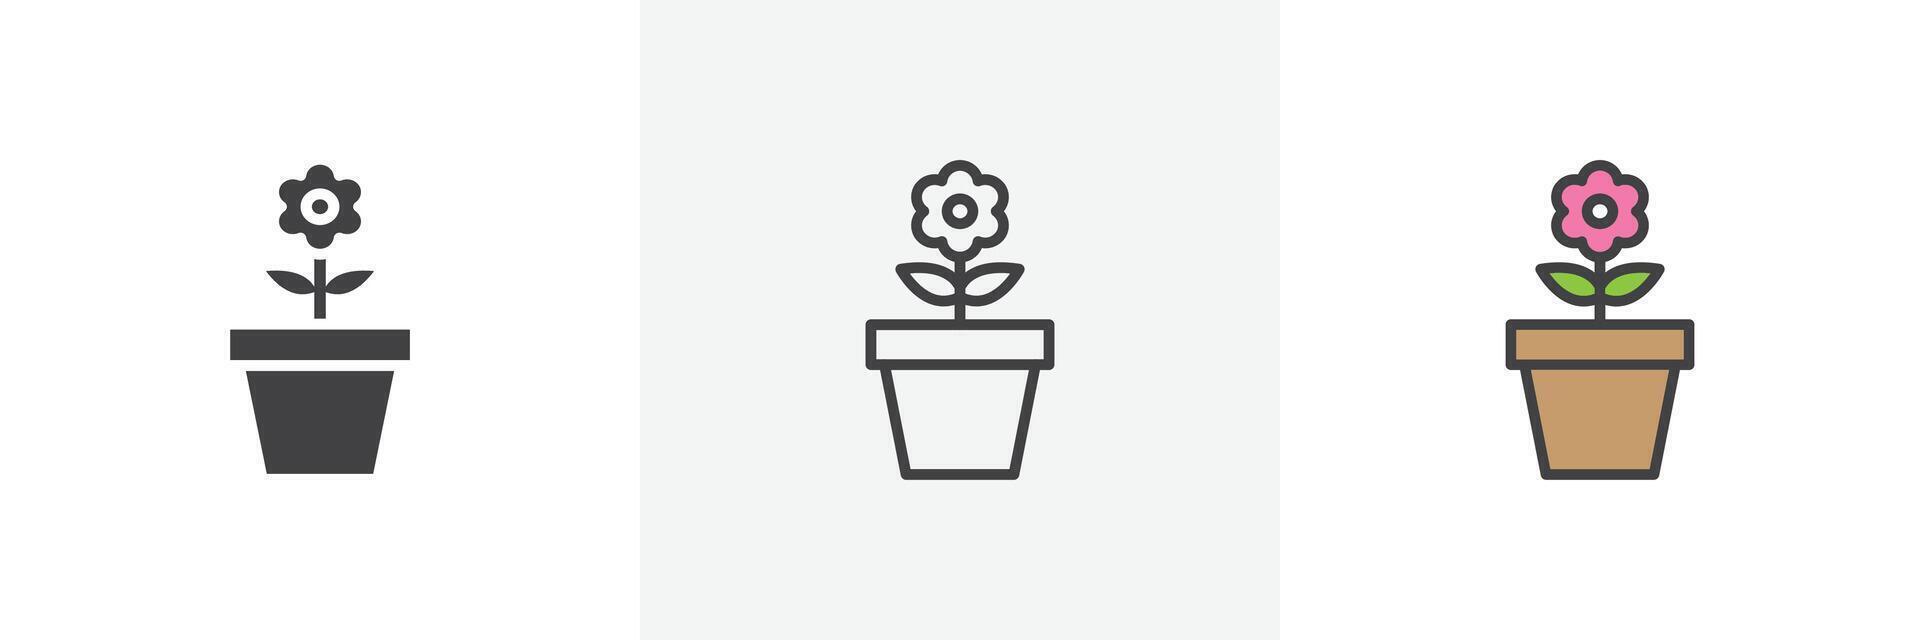 blomkruka ikon uppsättning vektor